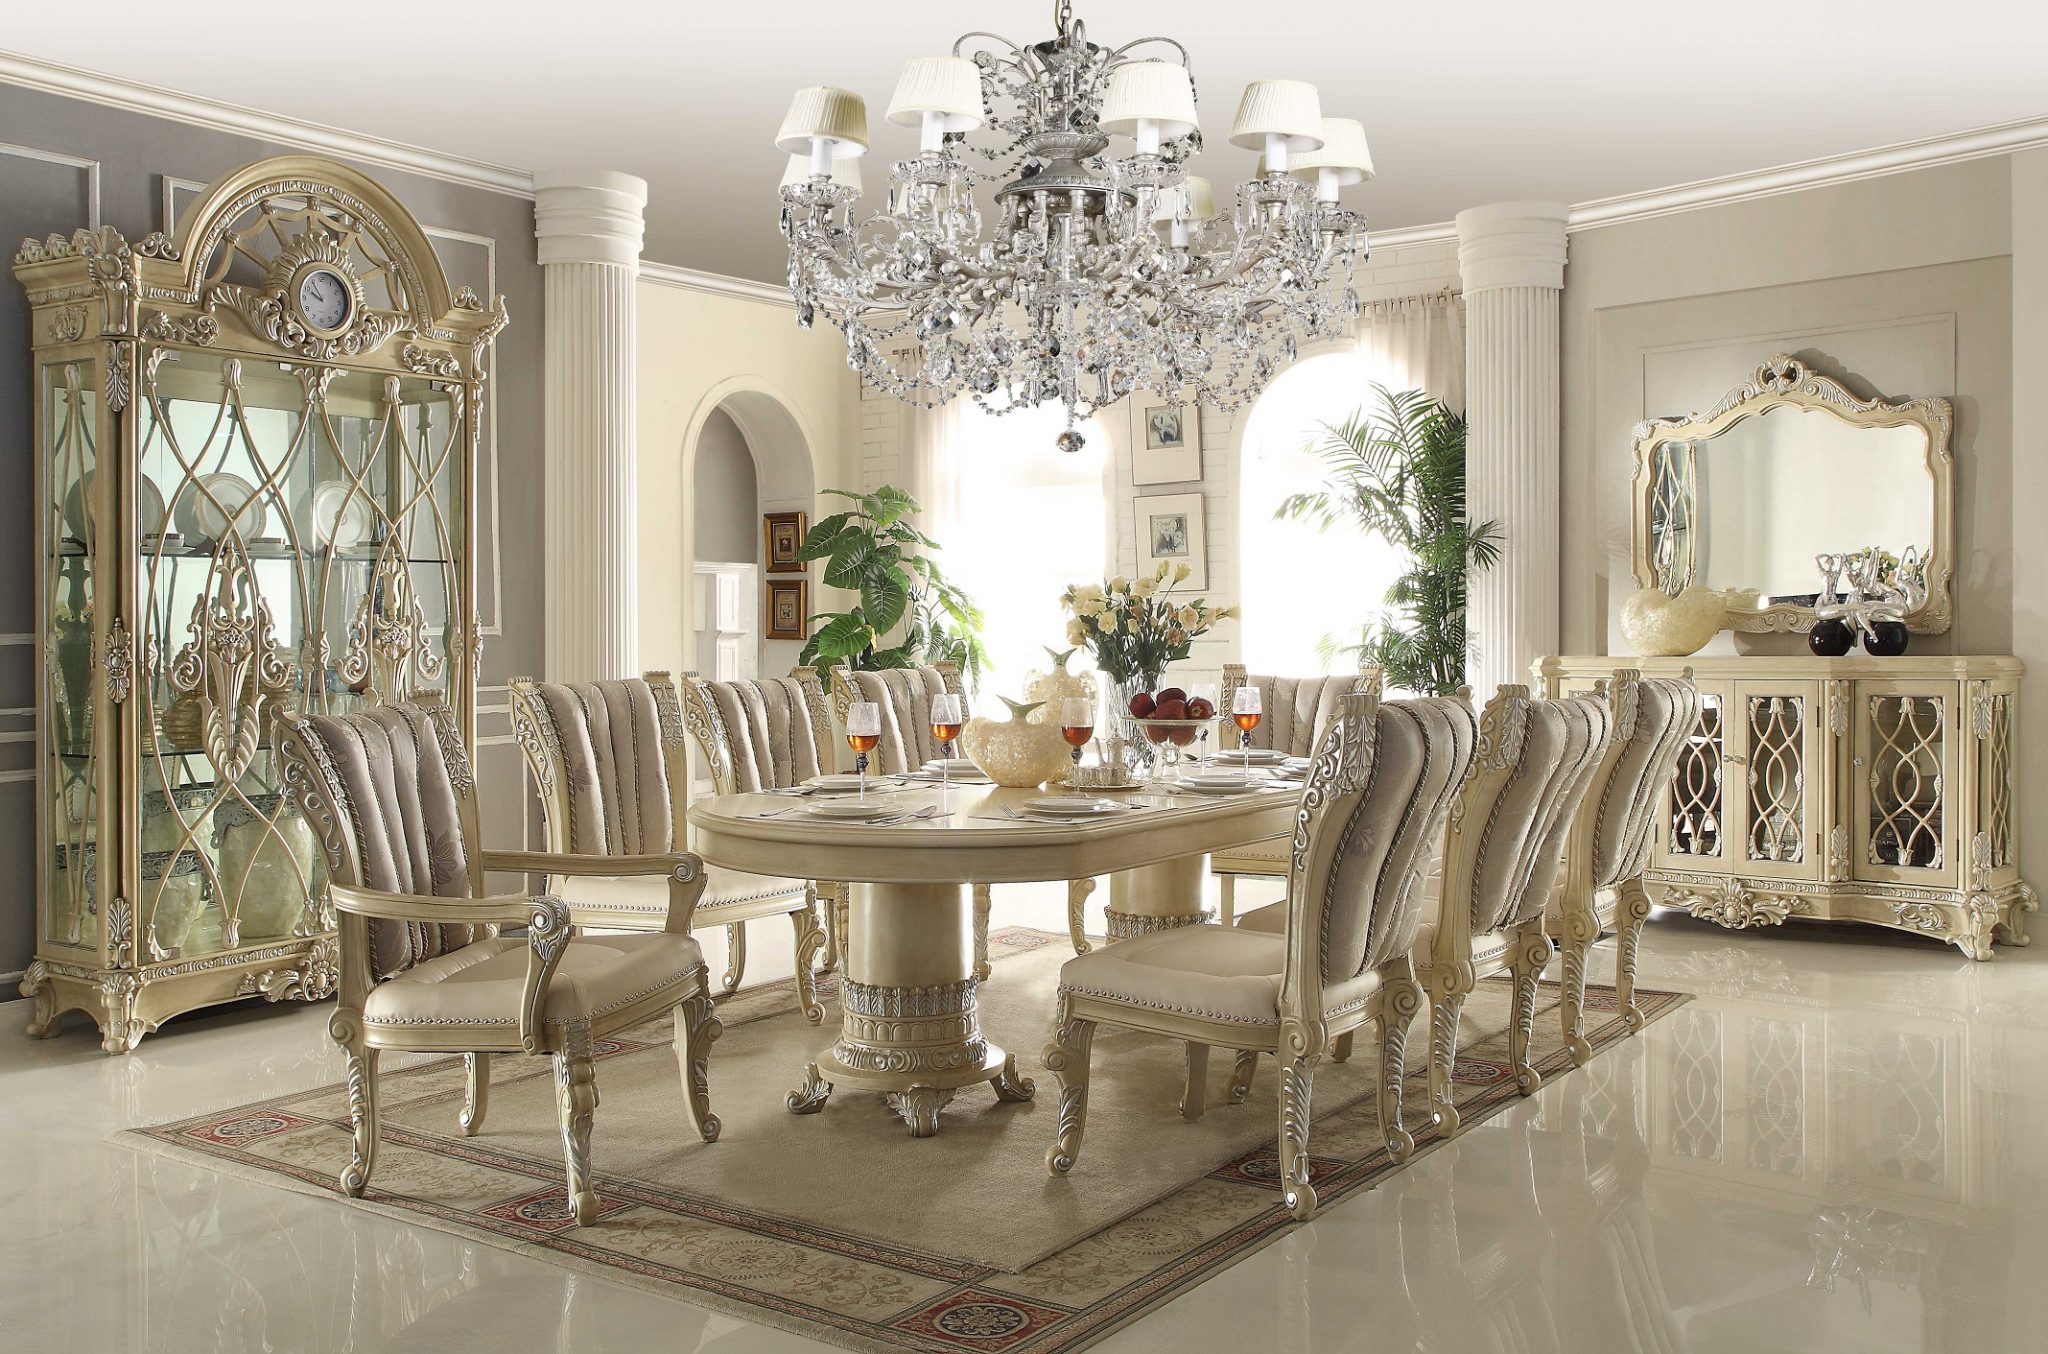 Royal Dining Set - Dining room ideas